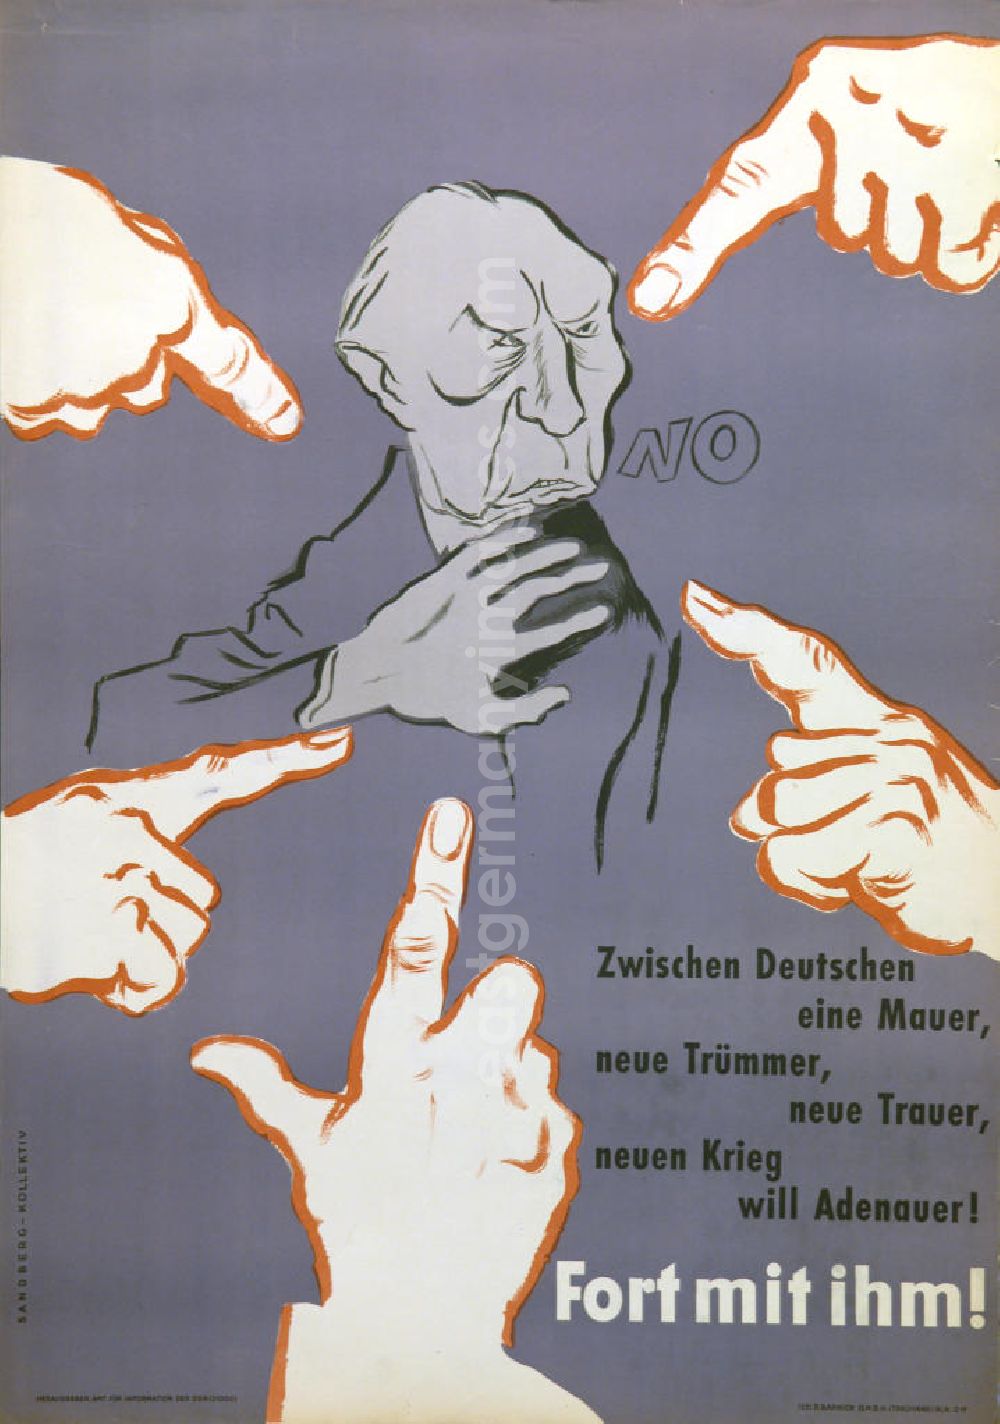 GDR image archive: Berlin - Plakat von Herbert Sandberg Fort mit ihm! aus dem Jahr 1958, 59,